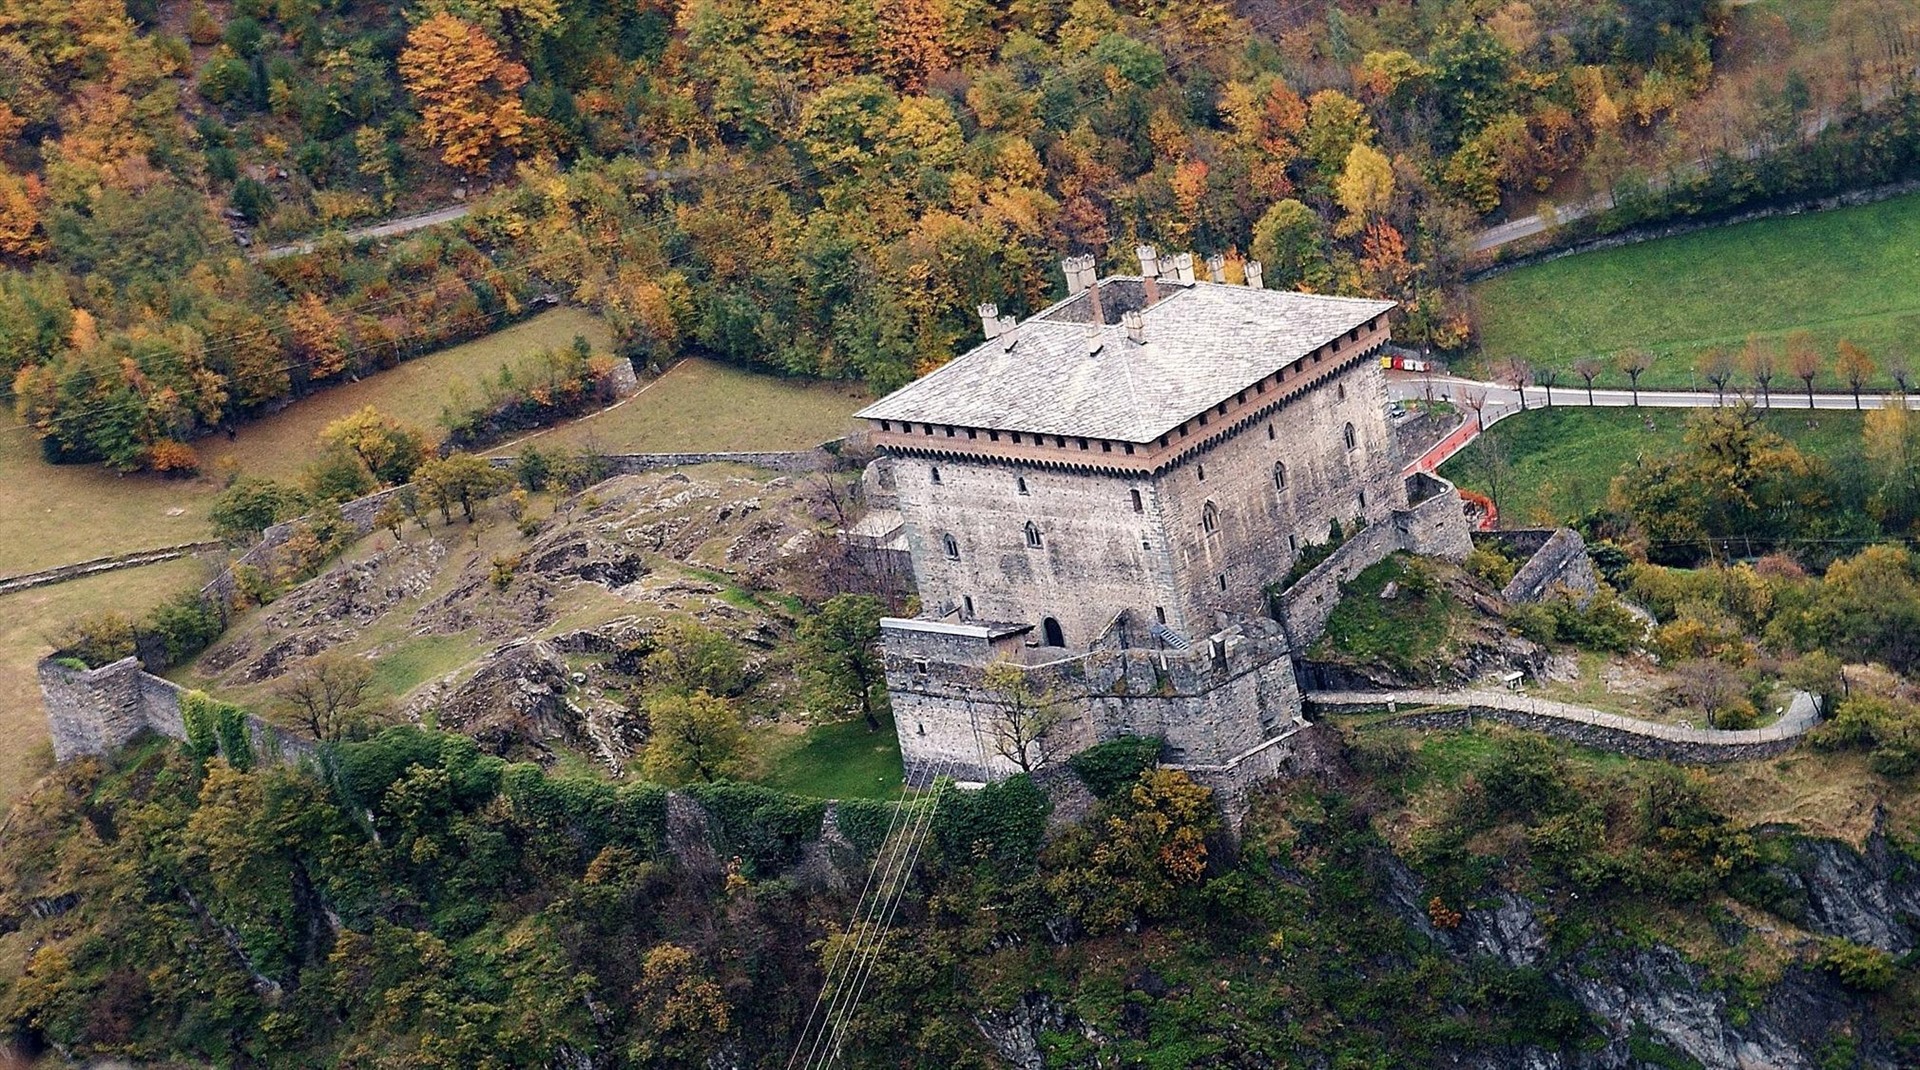 Lâu đài Verrès là một lâu đài kiên cố có từ thế kỷ 14 ở Verrès, ở thung lũng Aosta, phía Tây Bắc Italia. Ảnh: Reddit.com